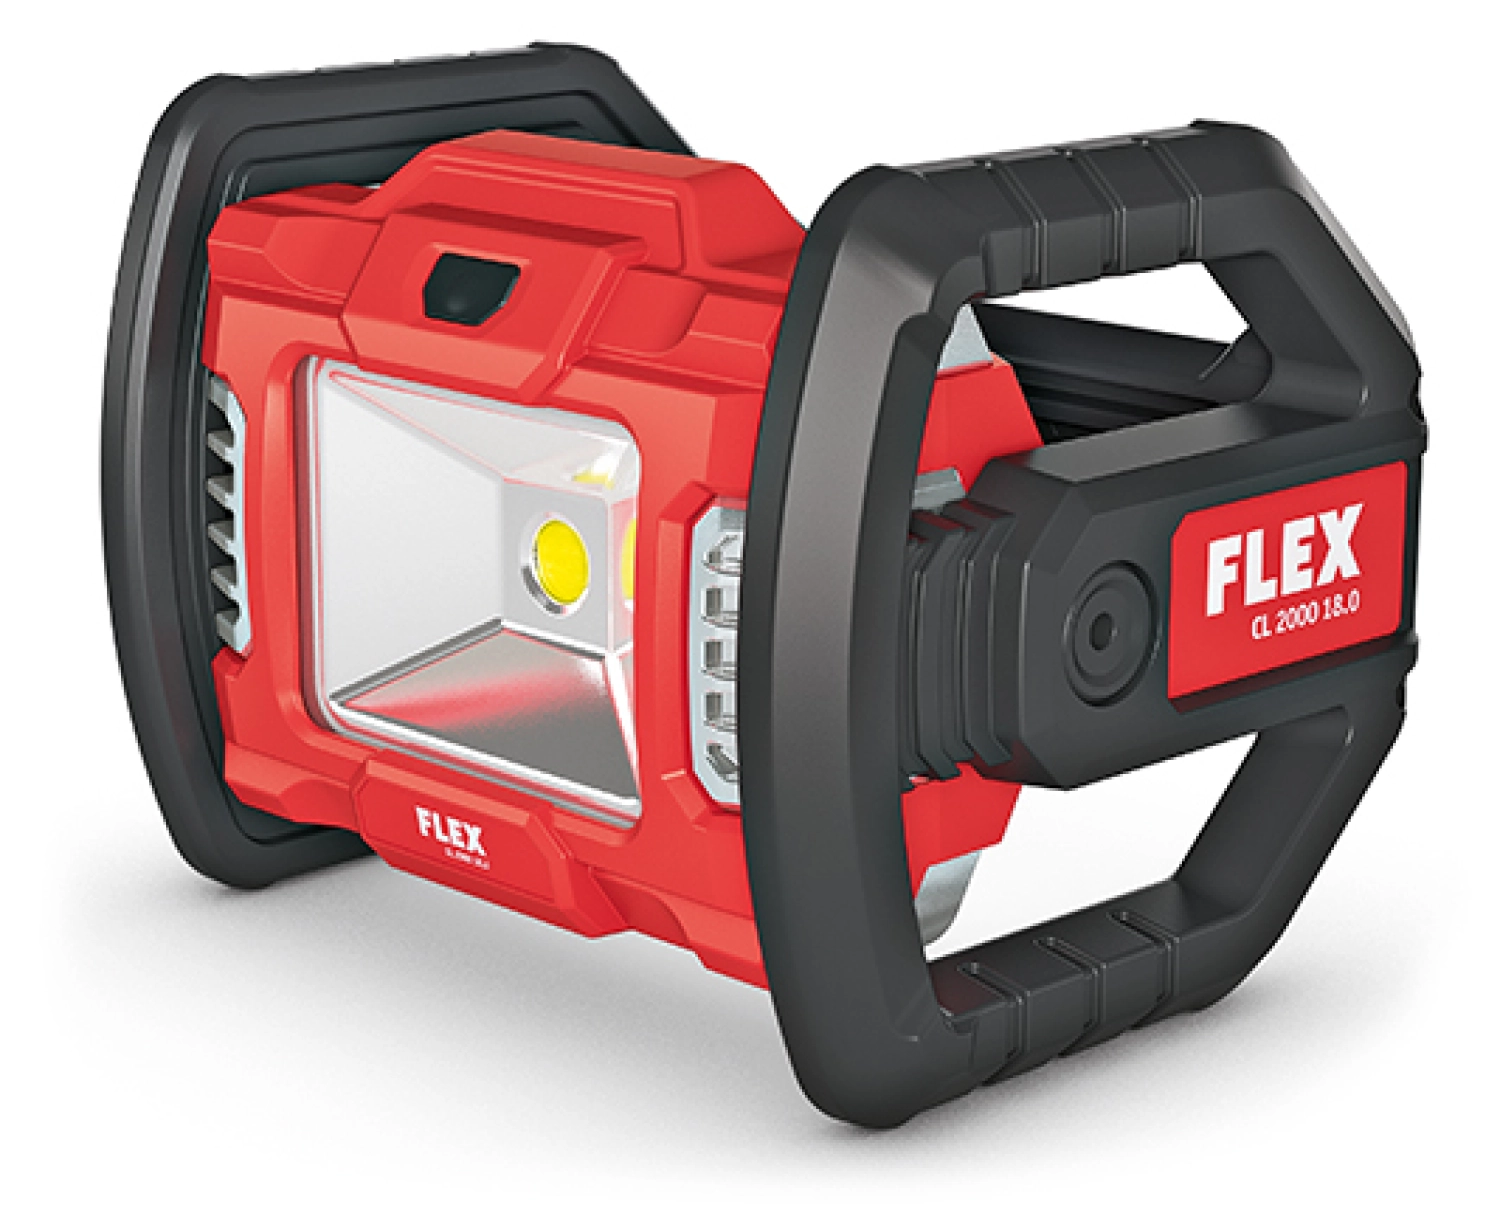 Flex CL 2000 18.0 Lampe sans fil-image